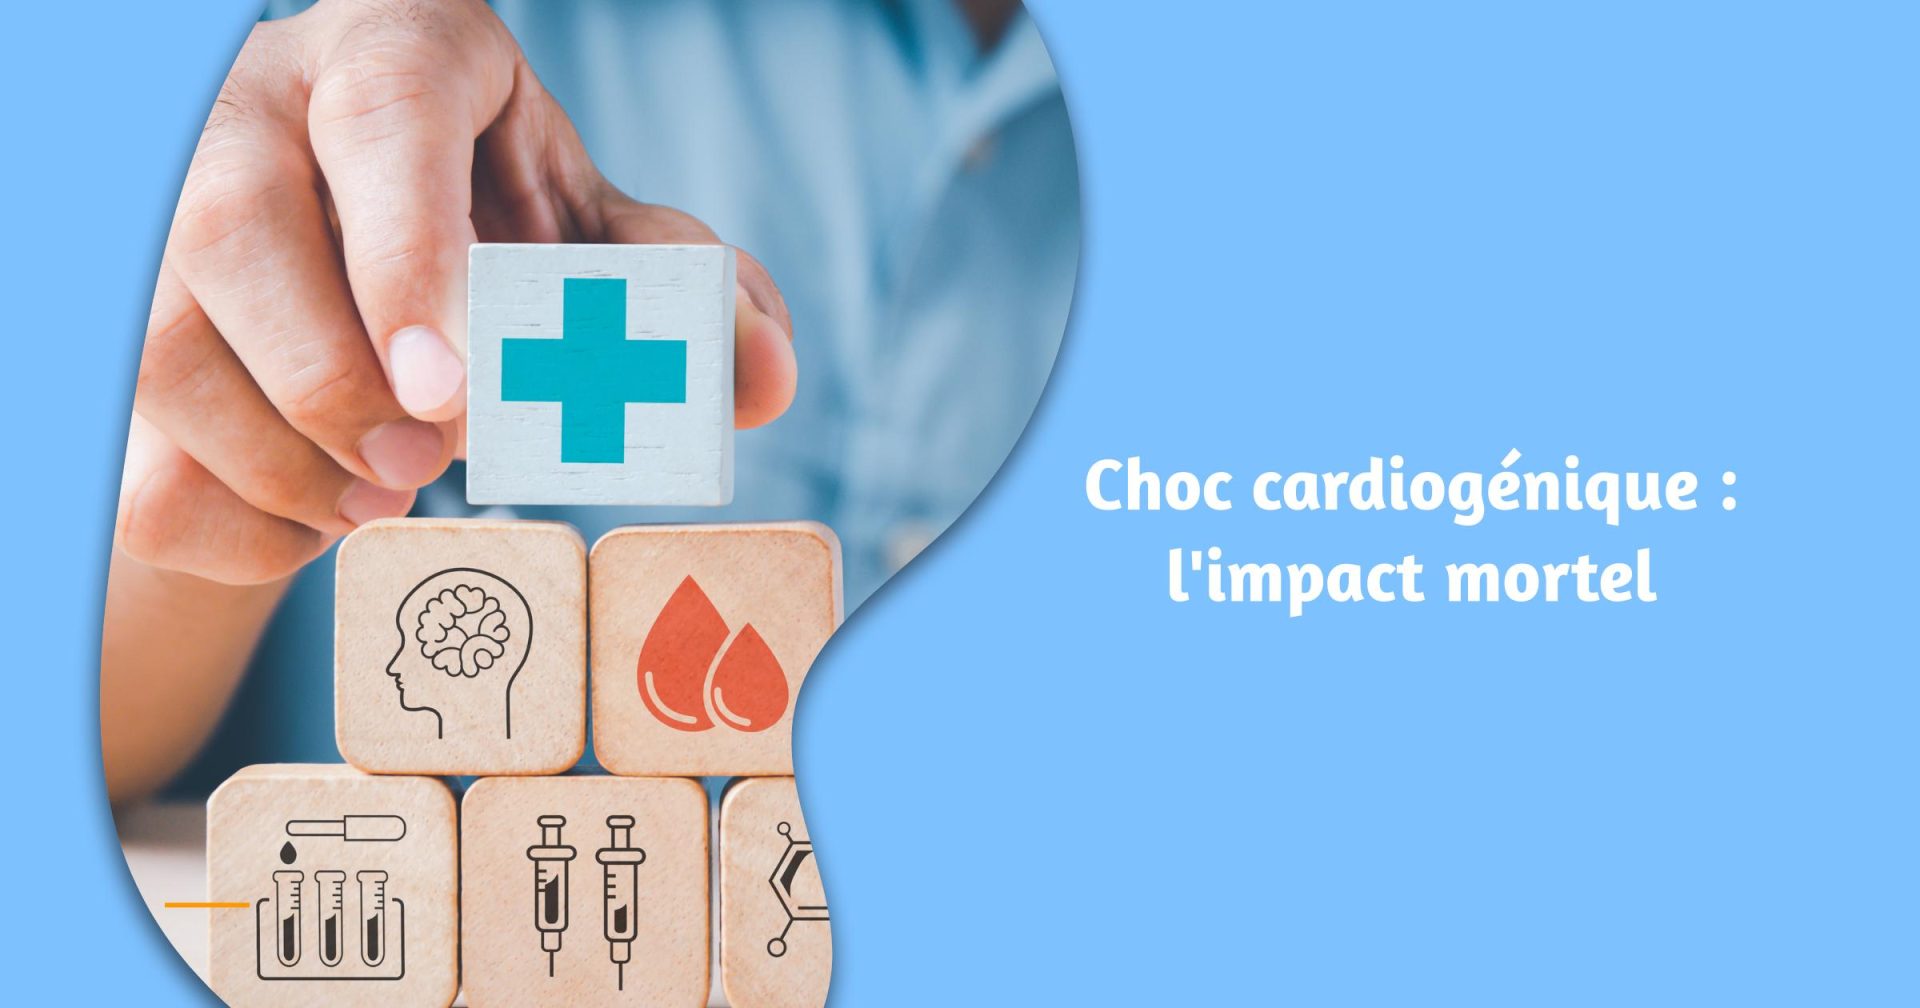 Choc cardiogénique : l'impact mortel